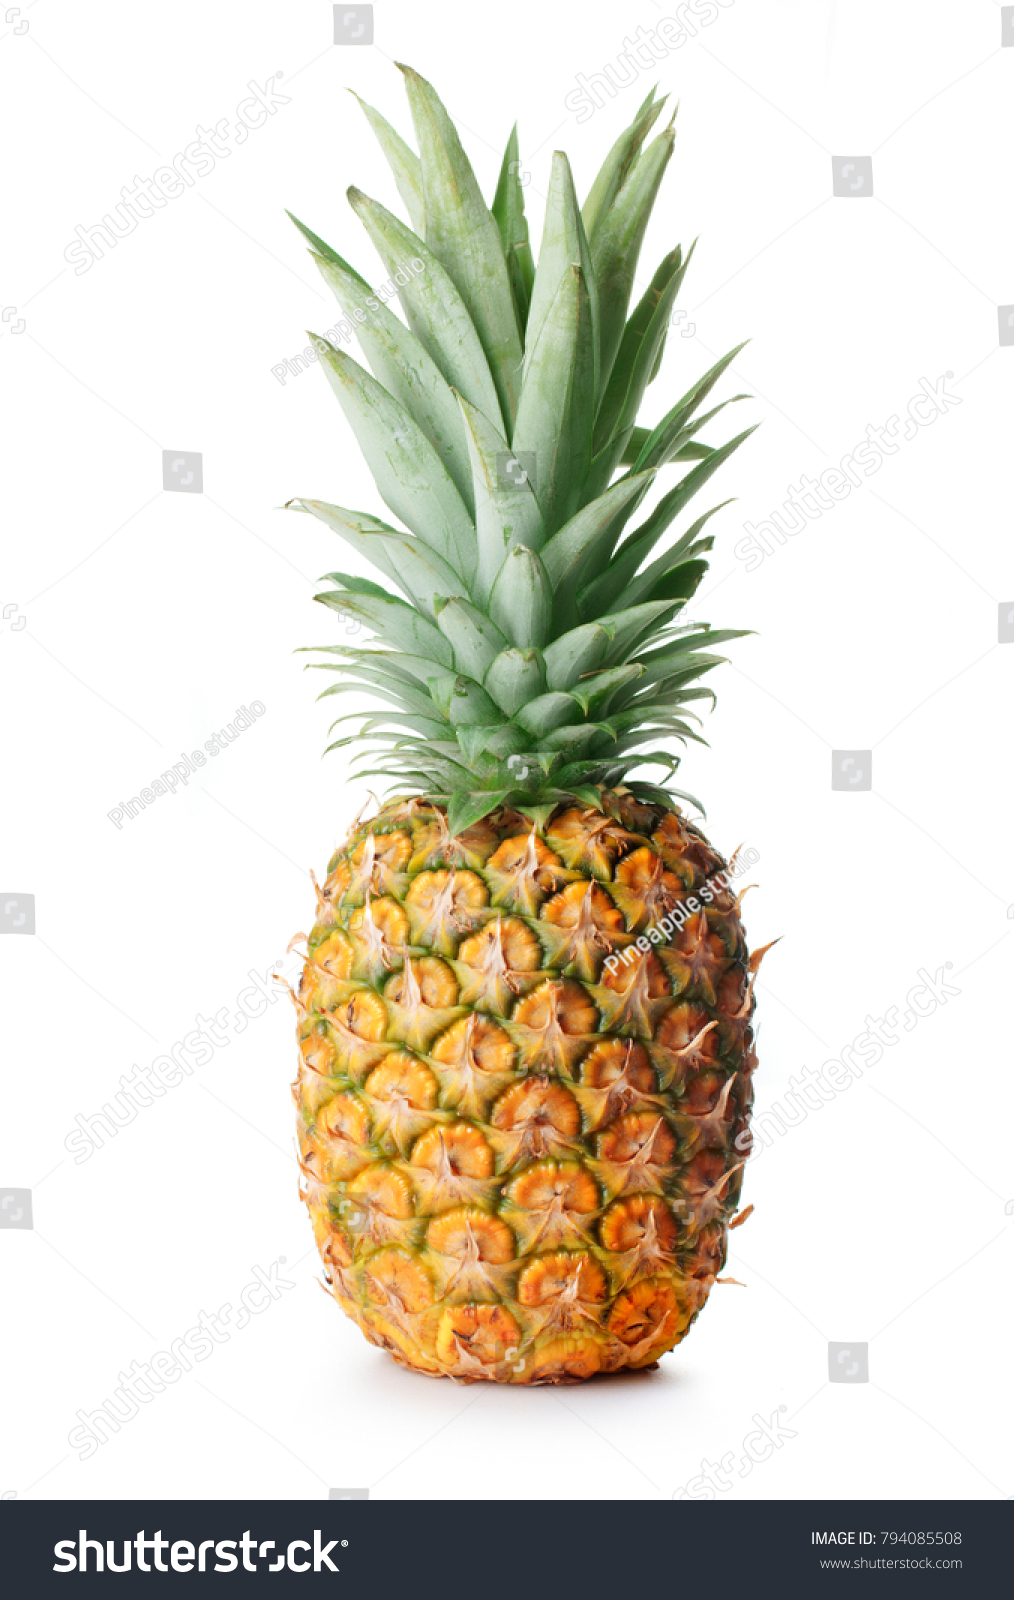 single whole pineapple isolated on white background #794085508